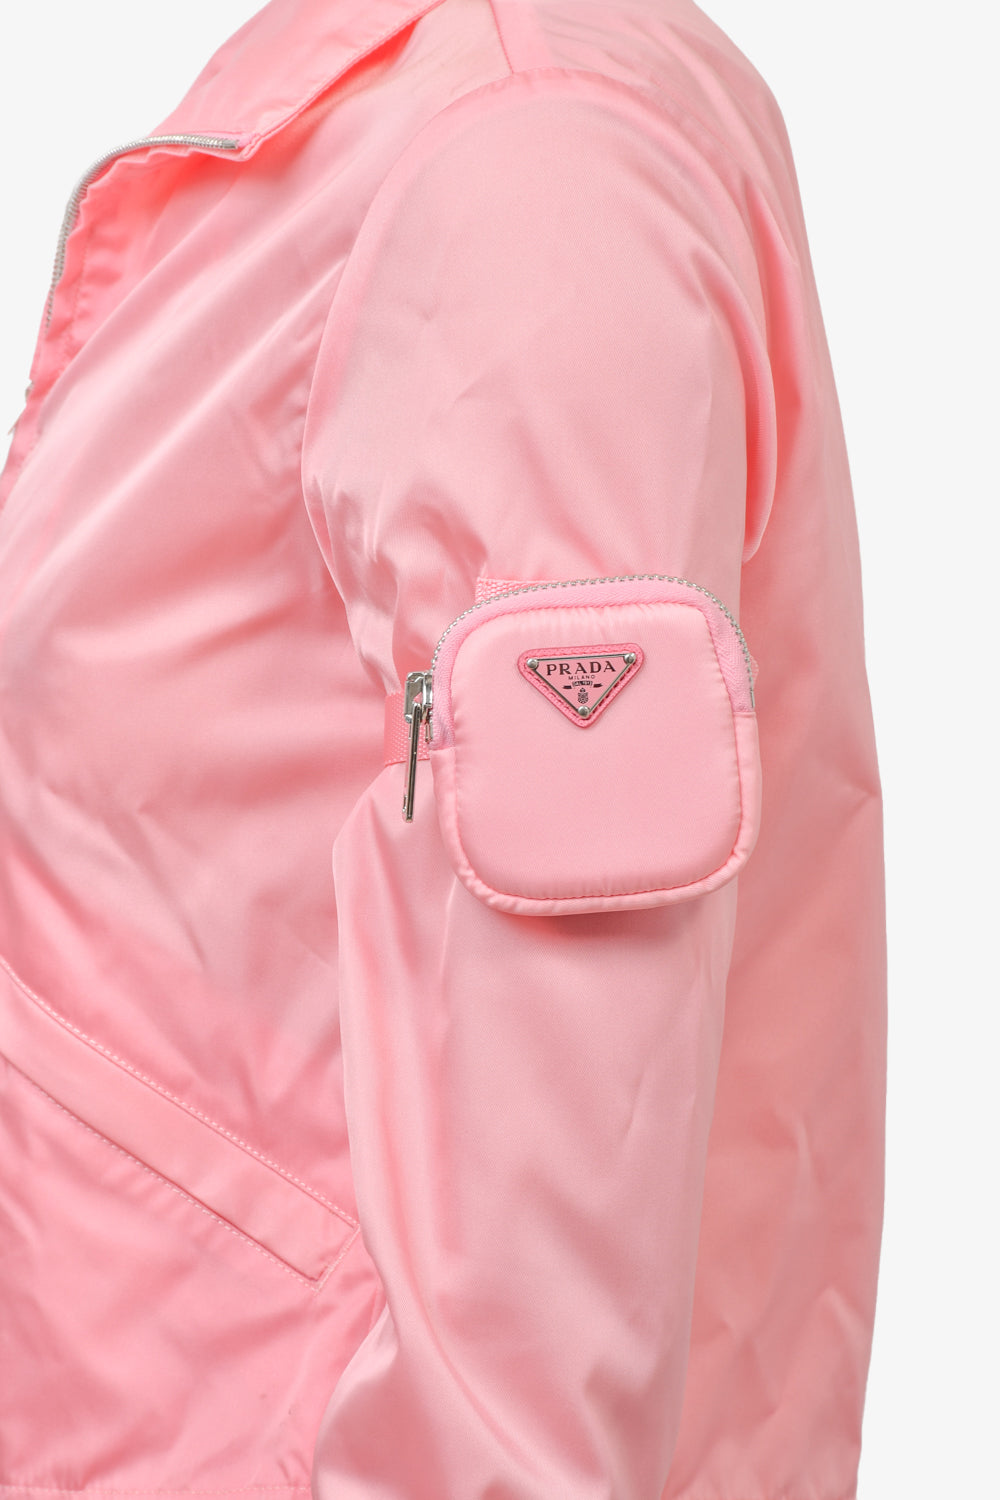 Prada Pink Re Nylon Zip Up Jacket w/ Zip Pouch sz  – Mine & Yours